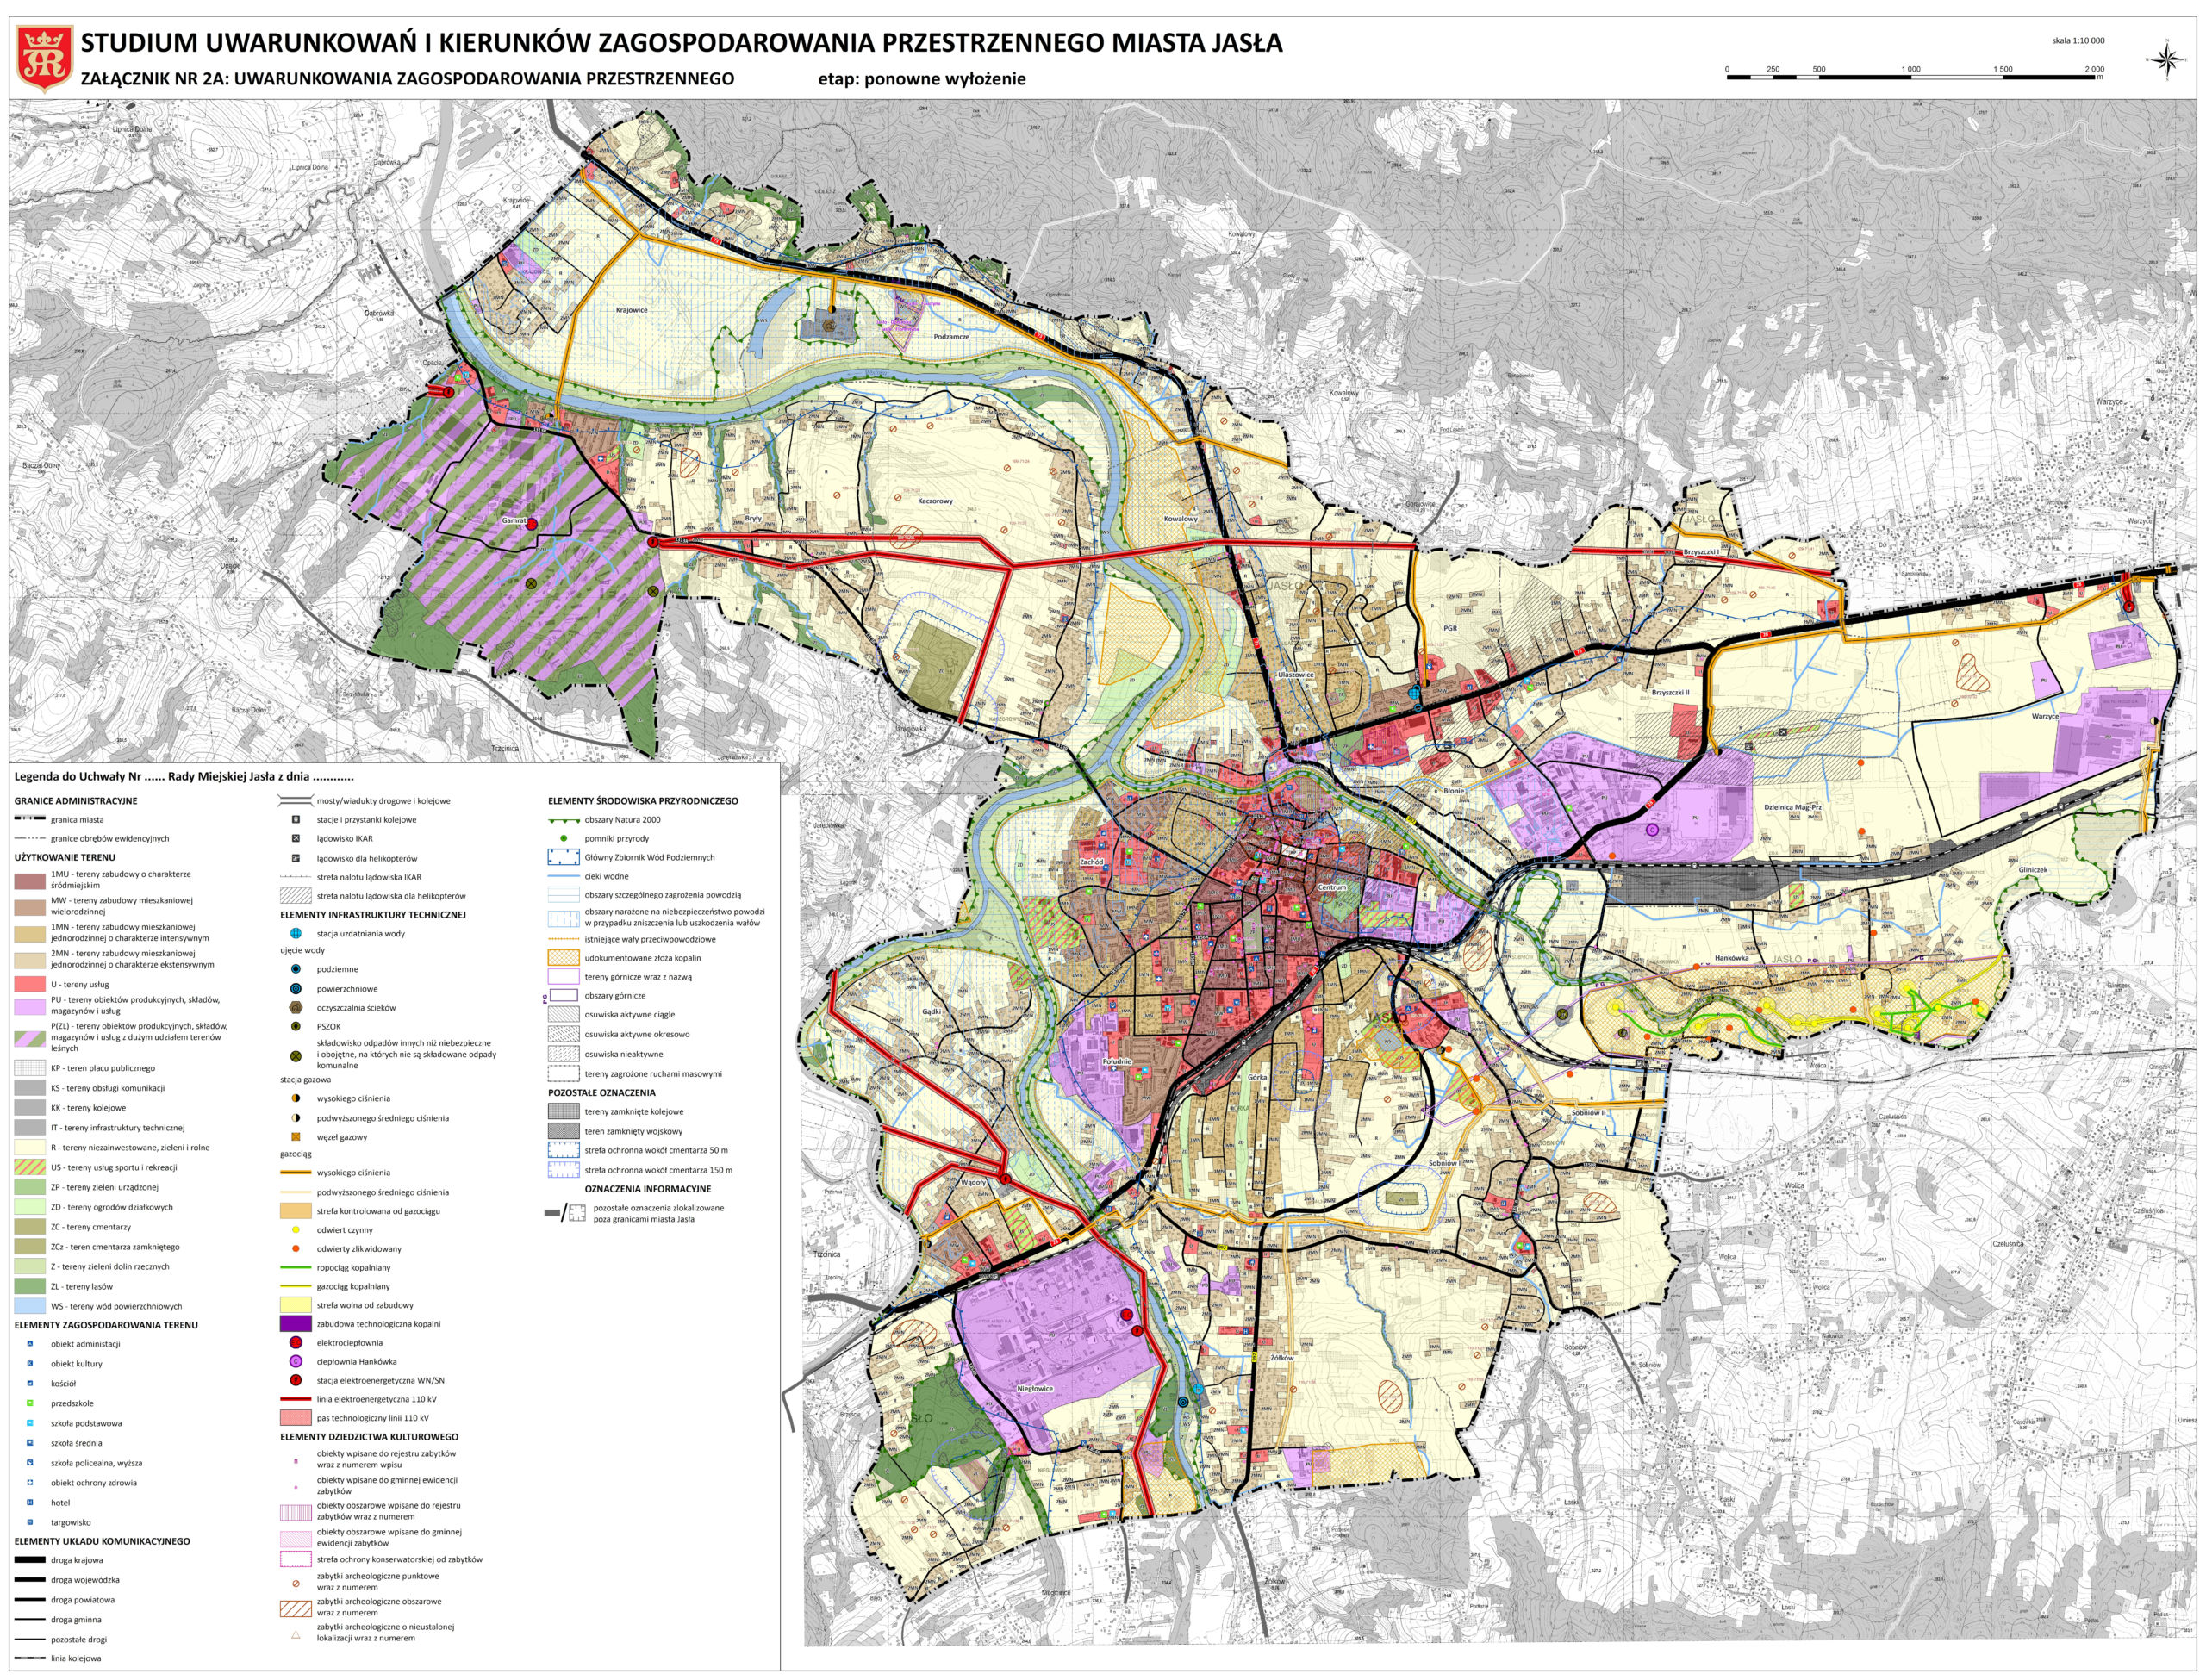 Studium uwarunkowań i kierunków zagospodarowania przestrzennego Miasta Jasła - uwarunkowania zagospodarowania przestrzennego